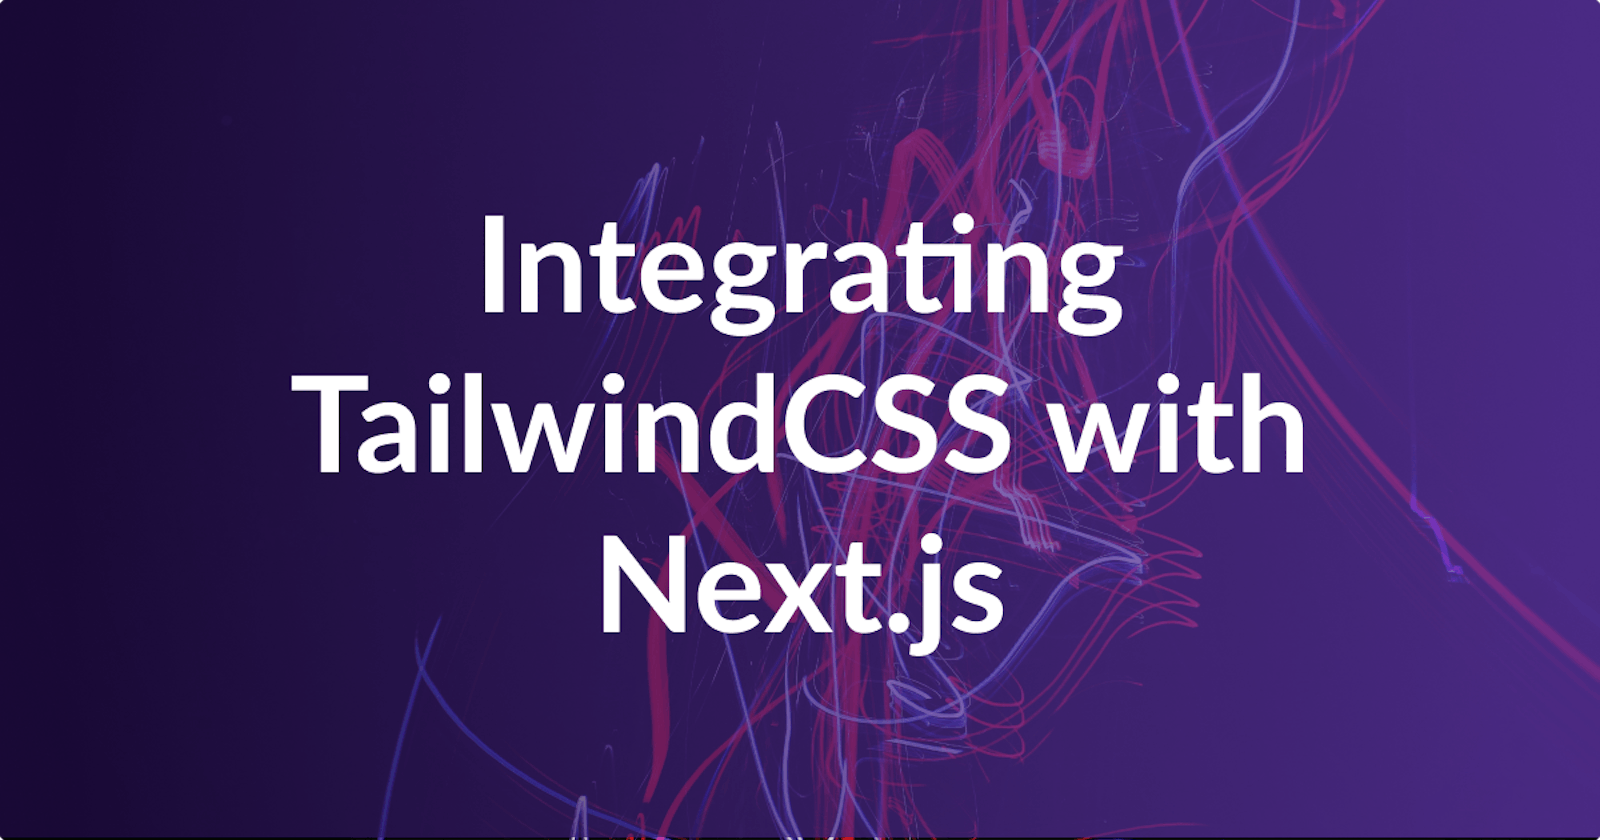 Integrating TailwindCSS with Next.js